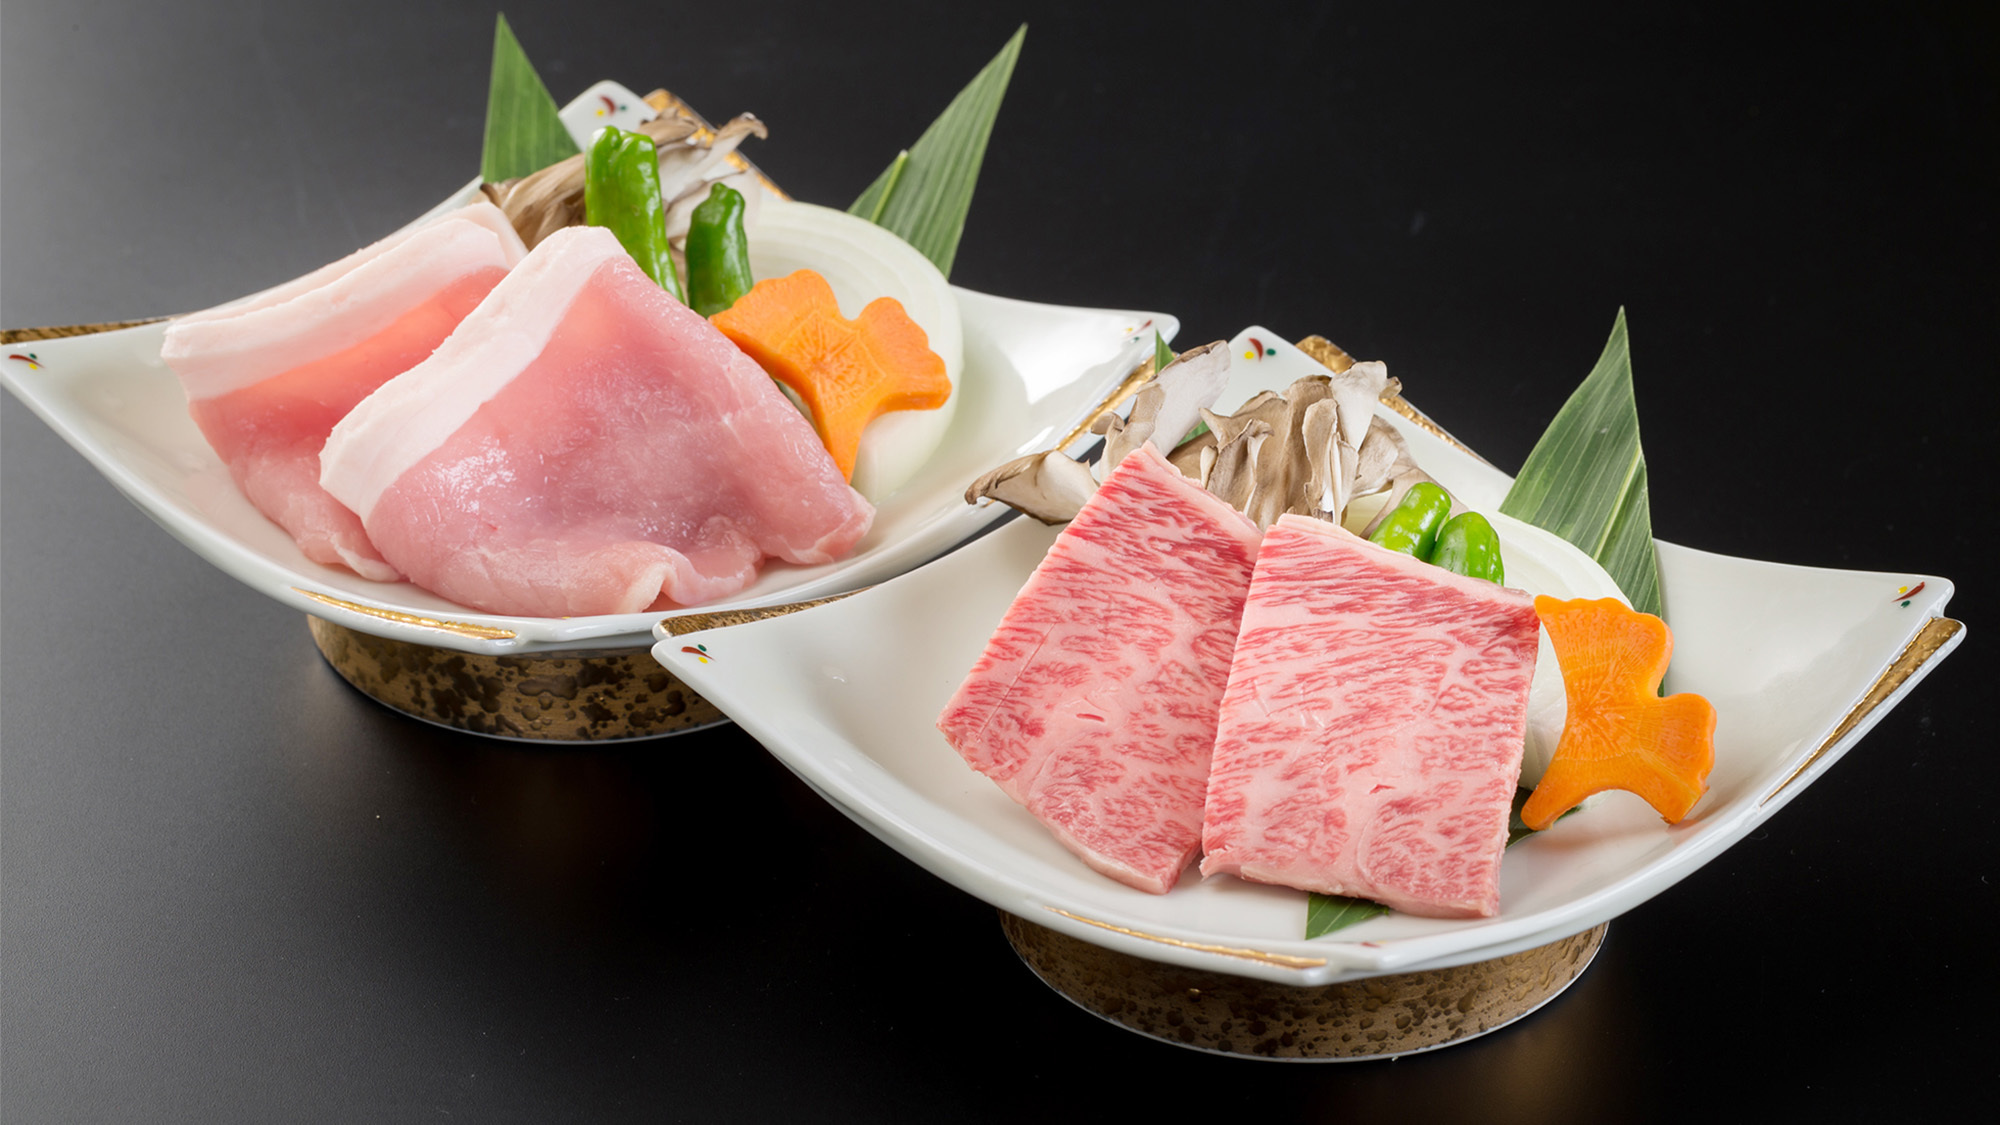 ・【料理イメージ】柔らかく肉汁溢れる会津牛がお客様に好評です